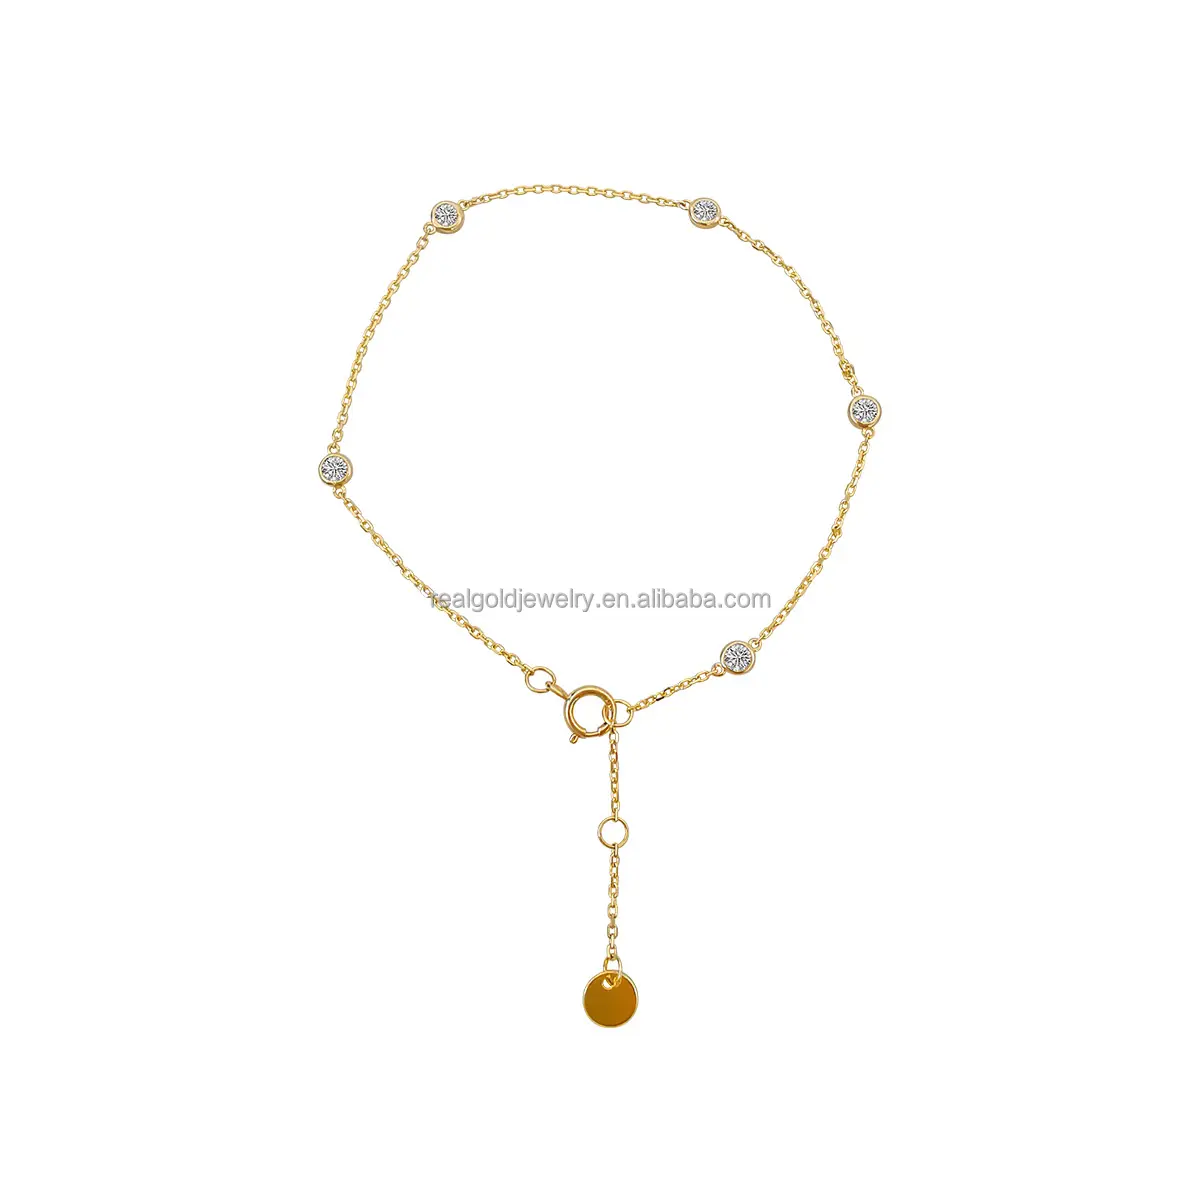 Wholesale New Trendy 14K Real Gold Yellow Moissanite Bracelet 14K Solid Gold Chain Gemstone Charm Bracelet for Women Gift Custom